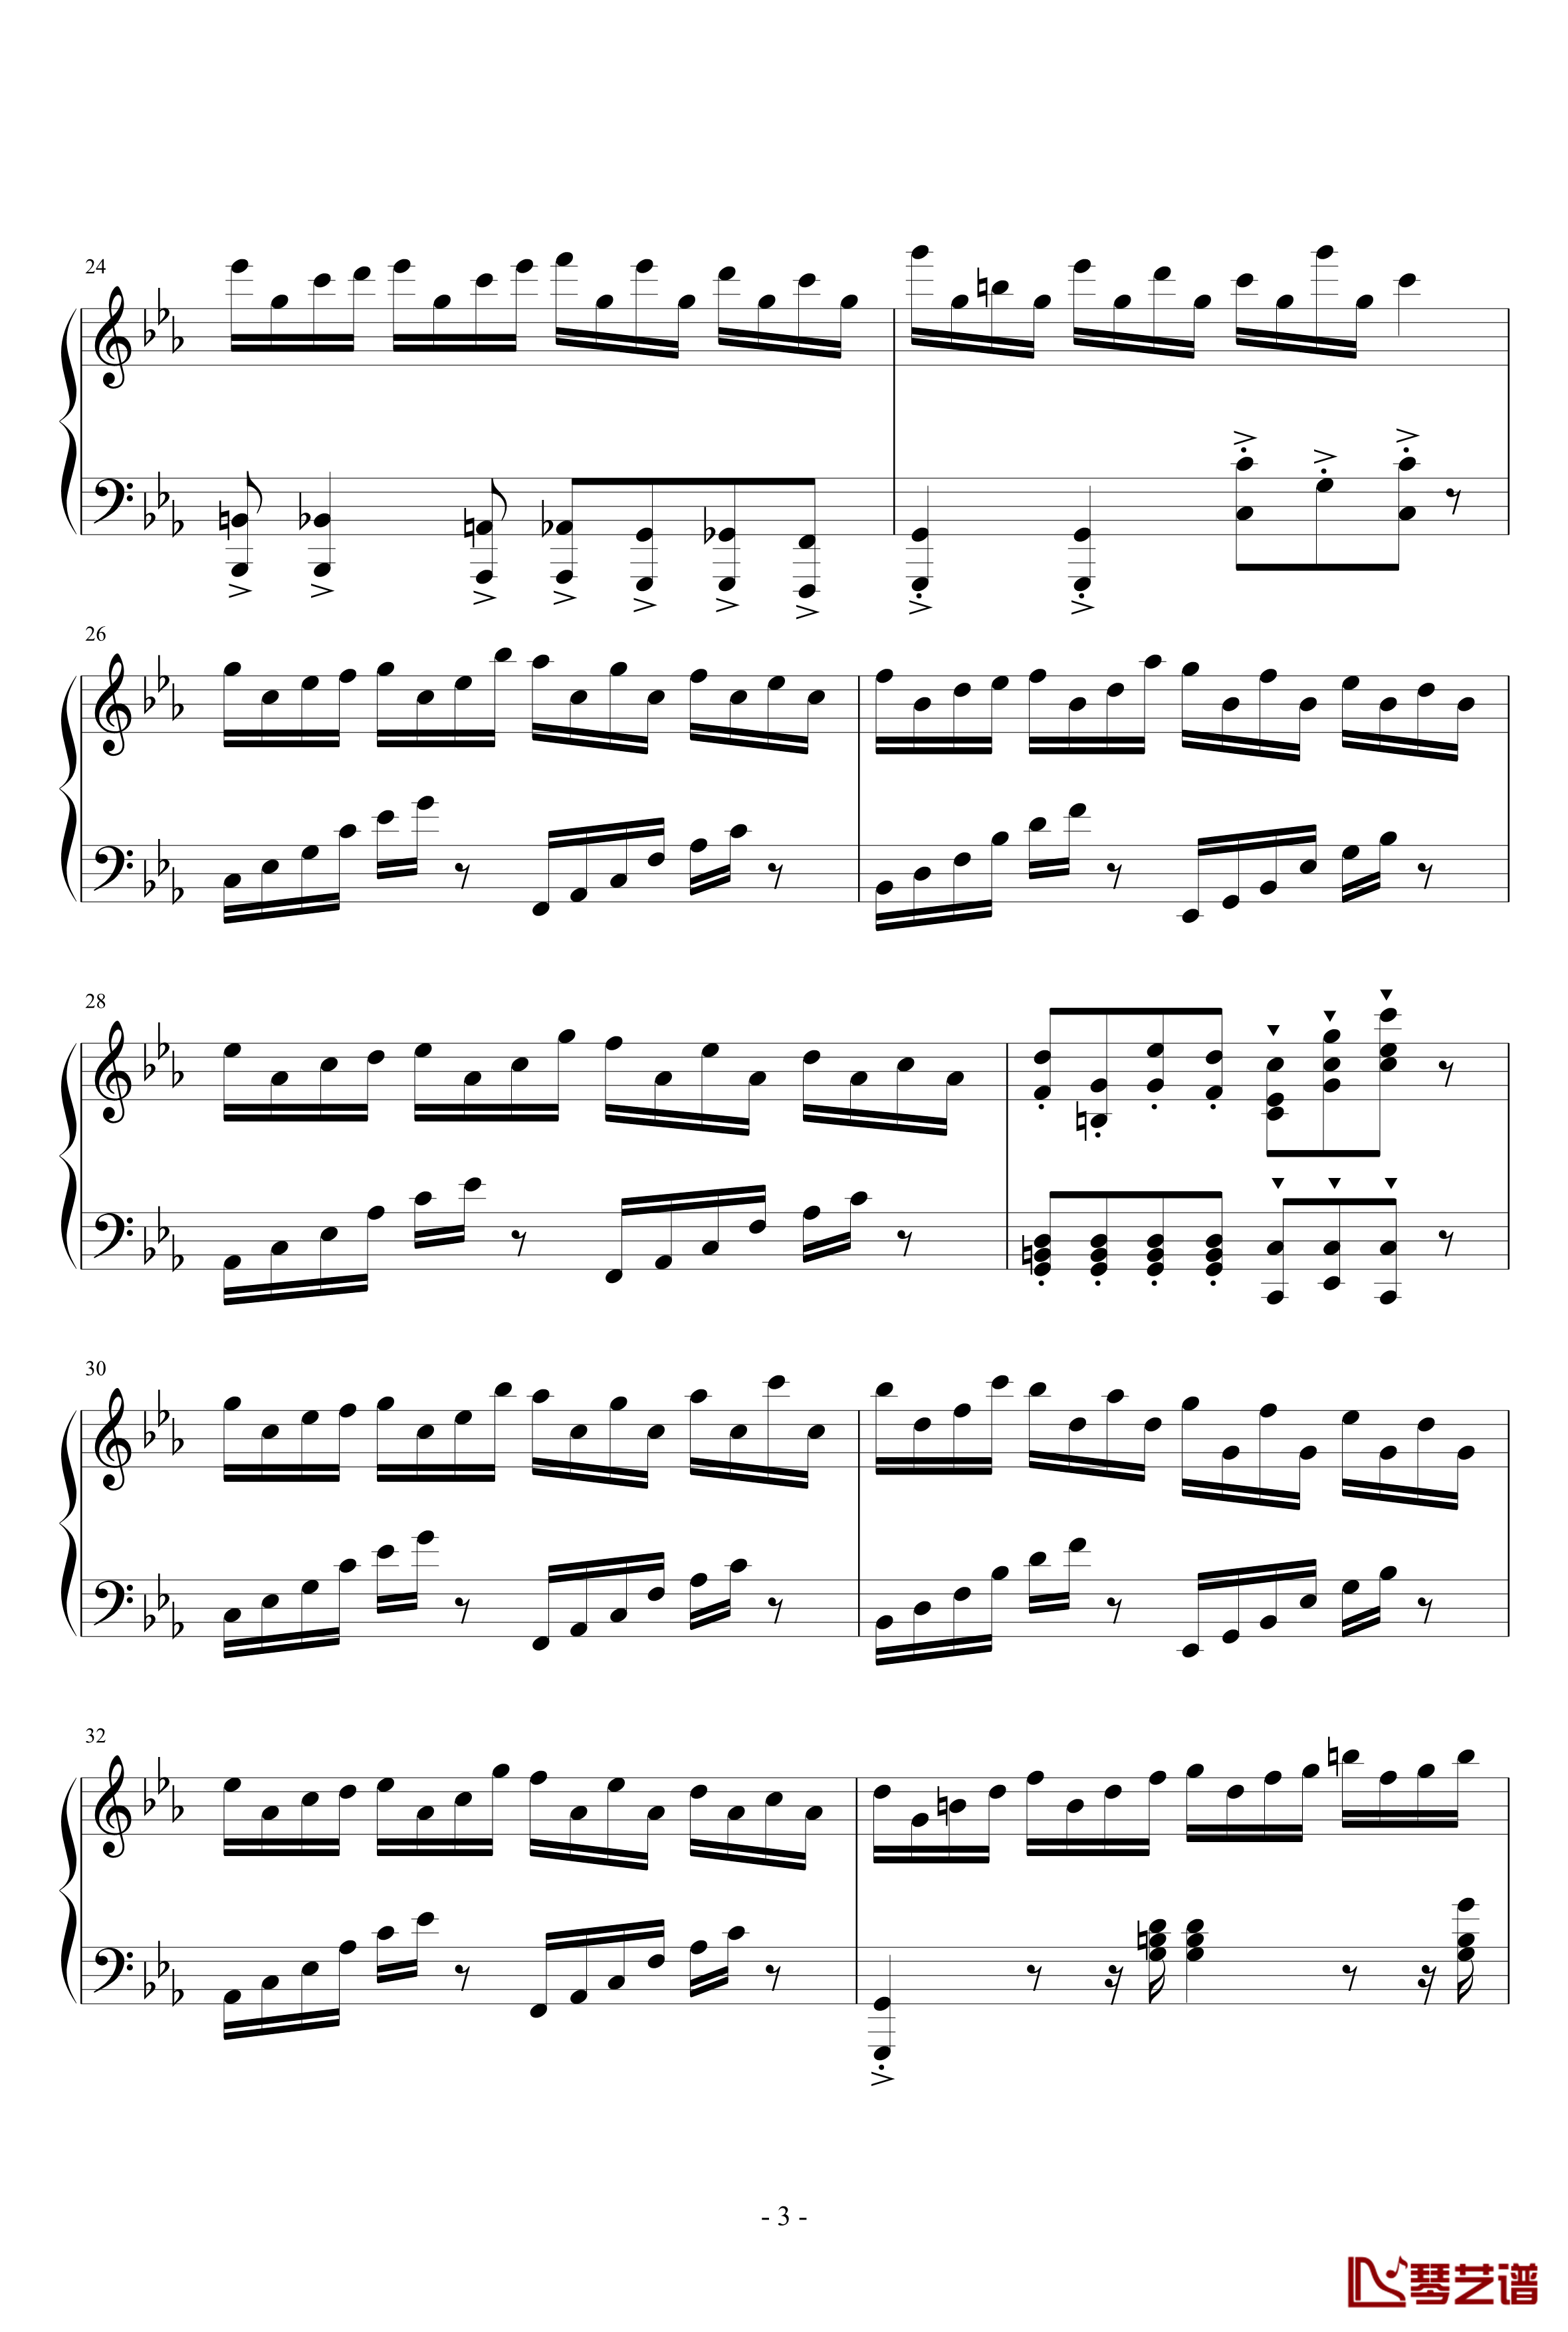 克罗地亚狂想曲钢琴谱-天津演奏会原版-马克西姆-Maksim·Mrvica3